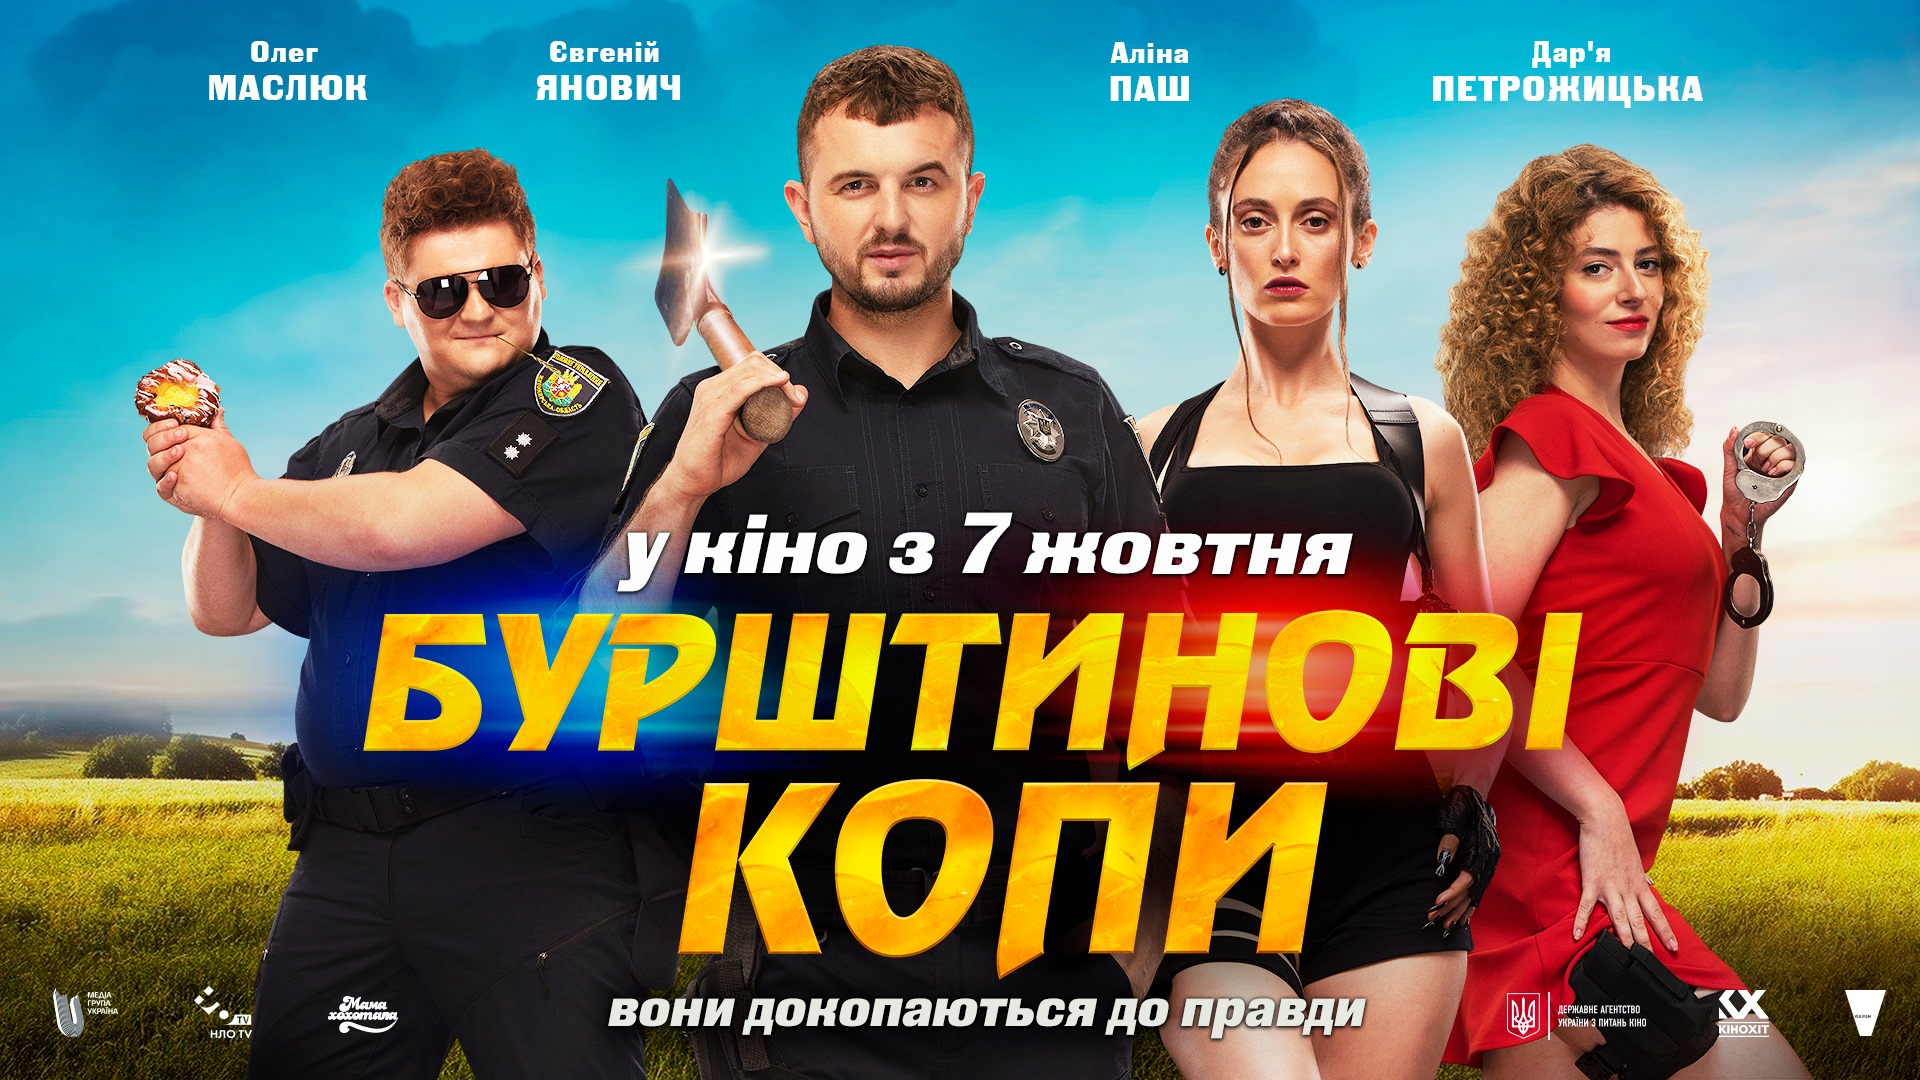 Комедия выходит в прокат 7 октября, а 3 октября всеукраинское кинопроизводство стартует из Ужгорода. 